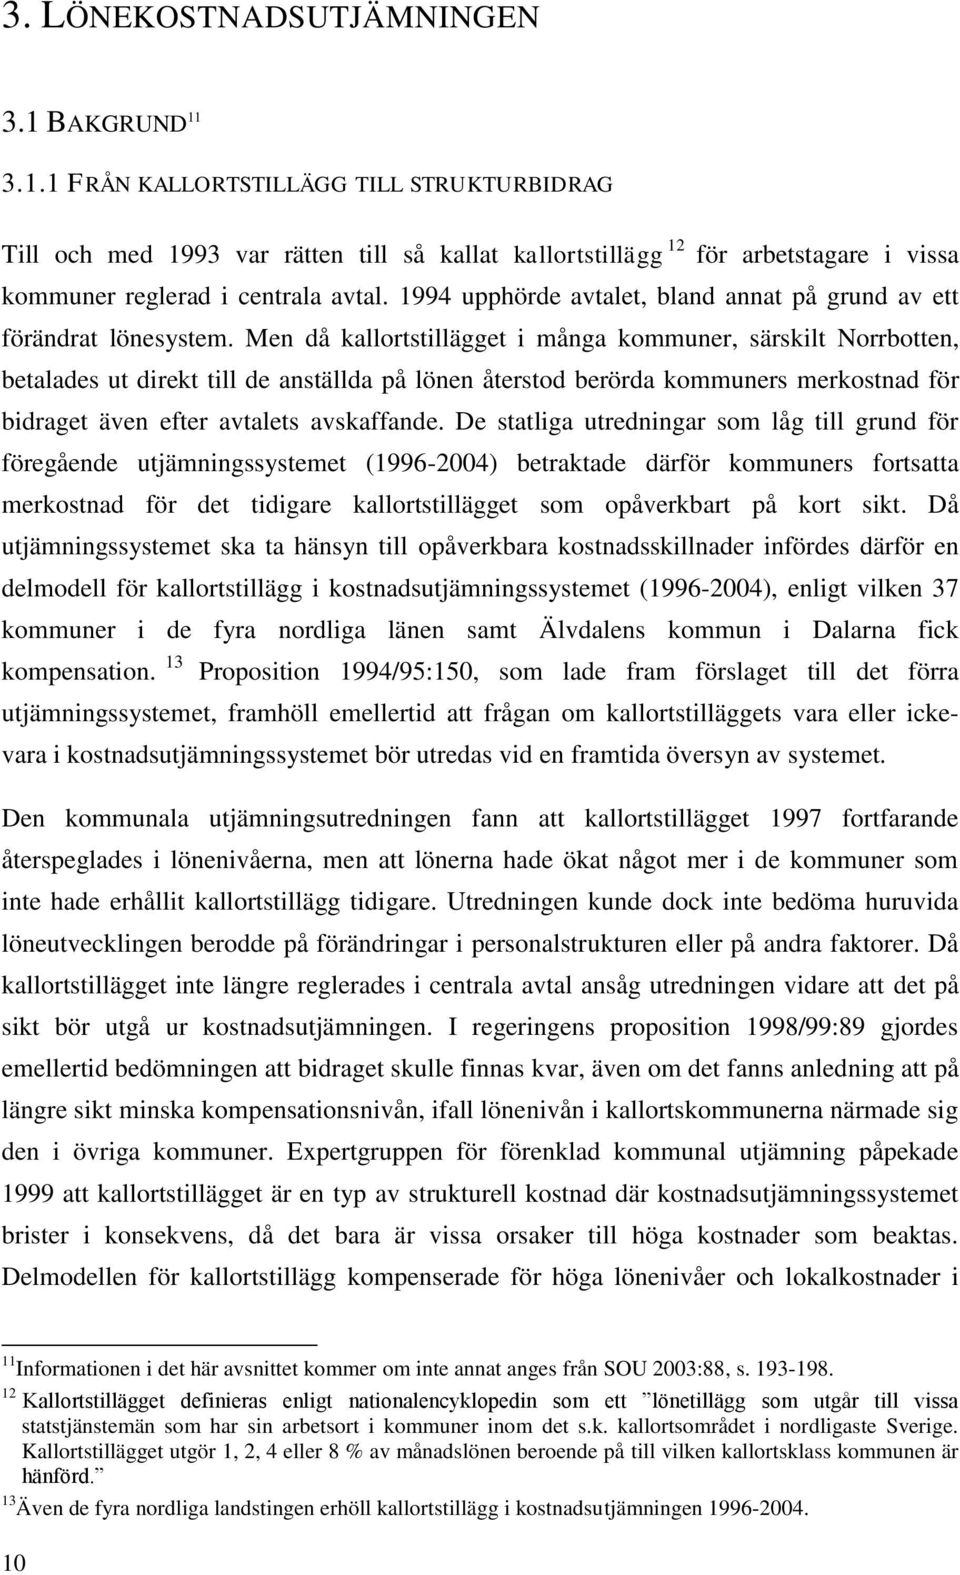 Men då kallortstillägget i många kommuner, särskilt Norrbotten, betalades ut direkt till de anställda på lönen återstod berörda kommuners merkostnad för bidraget även efter avtalets avskaffande.